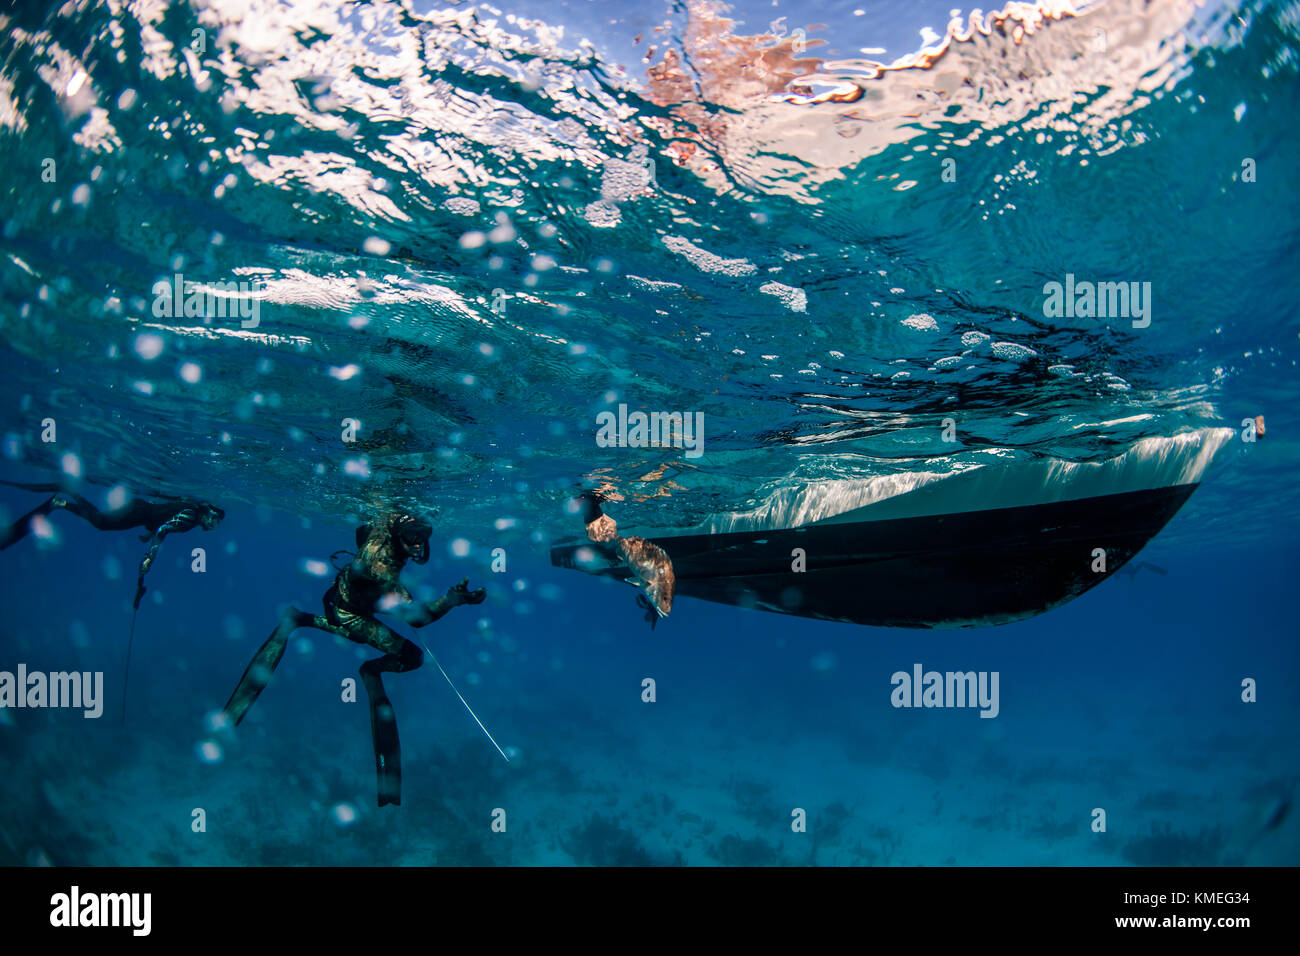 Le plongeur chargeait du poisson pêché tout en pêchant le fer de lance dans le bateau, Clarence Town, long Island, Bahamas Banque D'Images